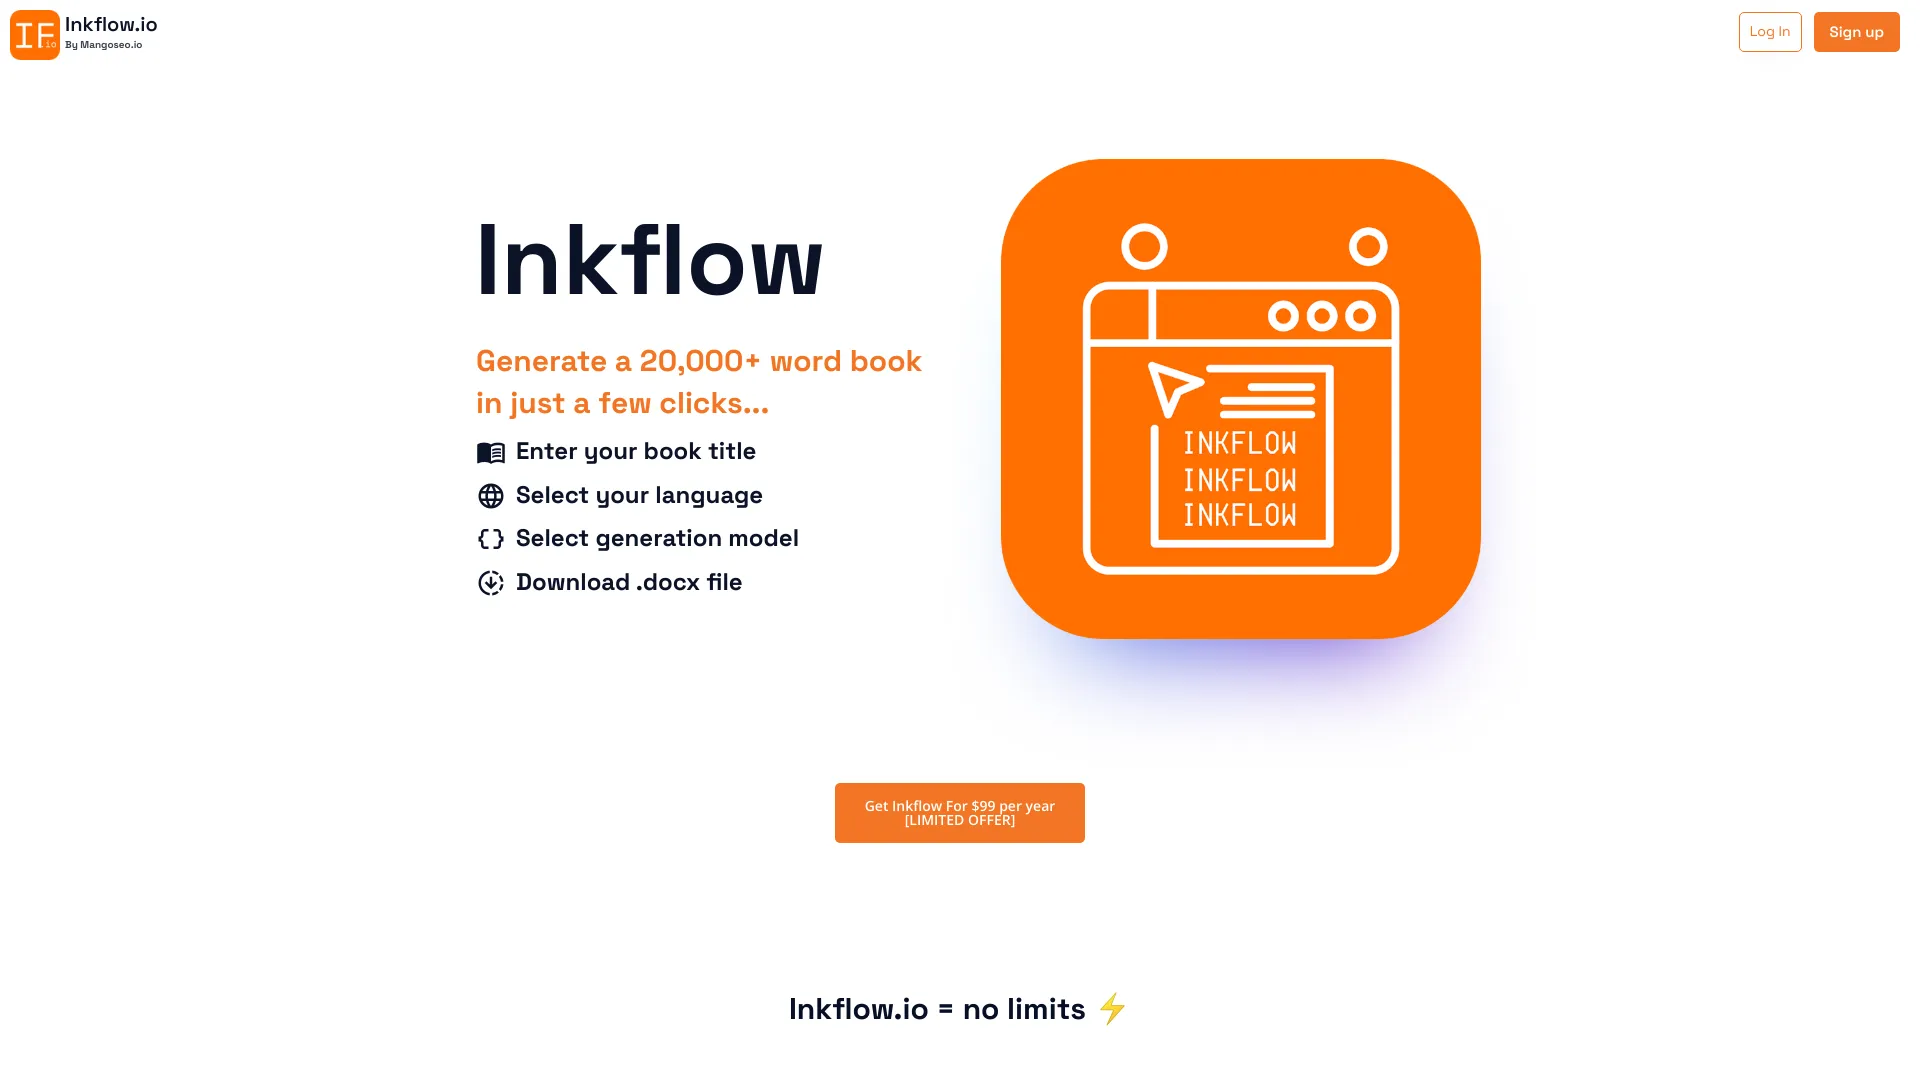 inkflow.io